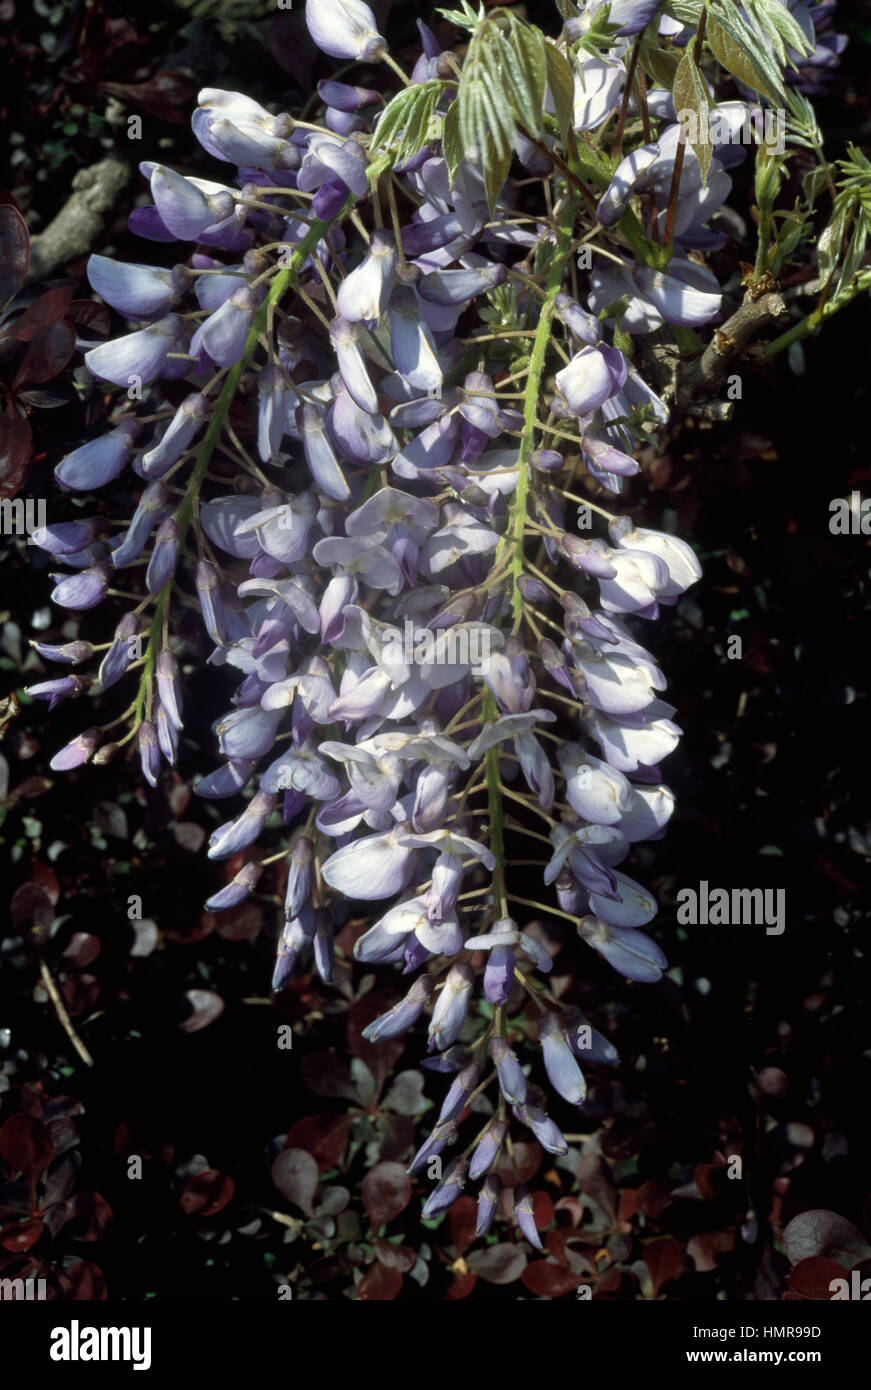 Cinese (Glicine Wisteria sinensis), Fabaceae. Foto Stock